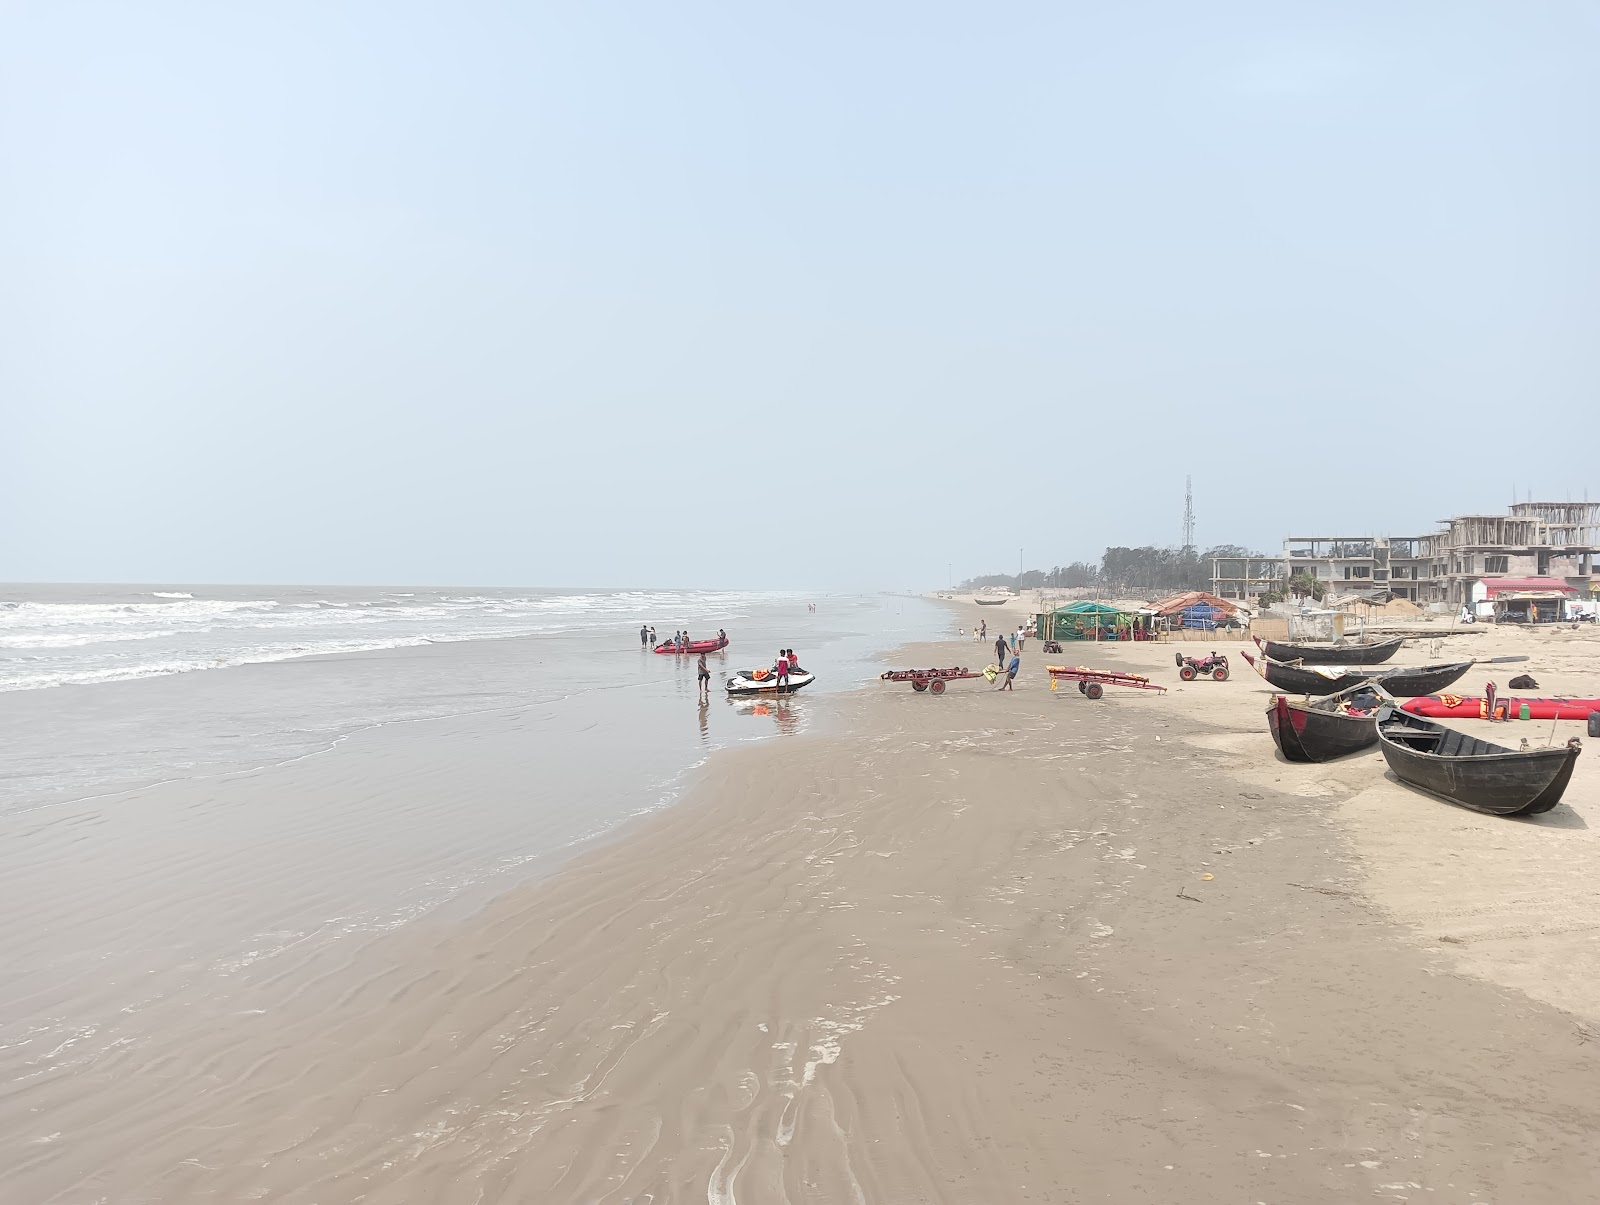 Mandarmani Beach'in fotoğrafı parlak ince kum yüzey ile